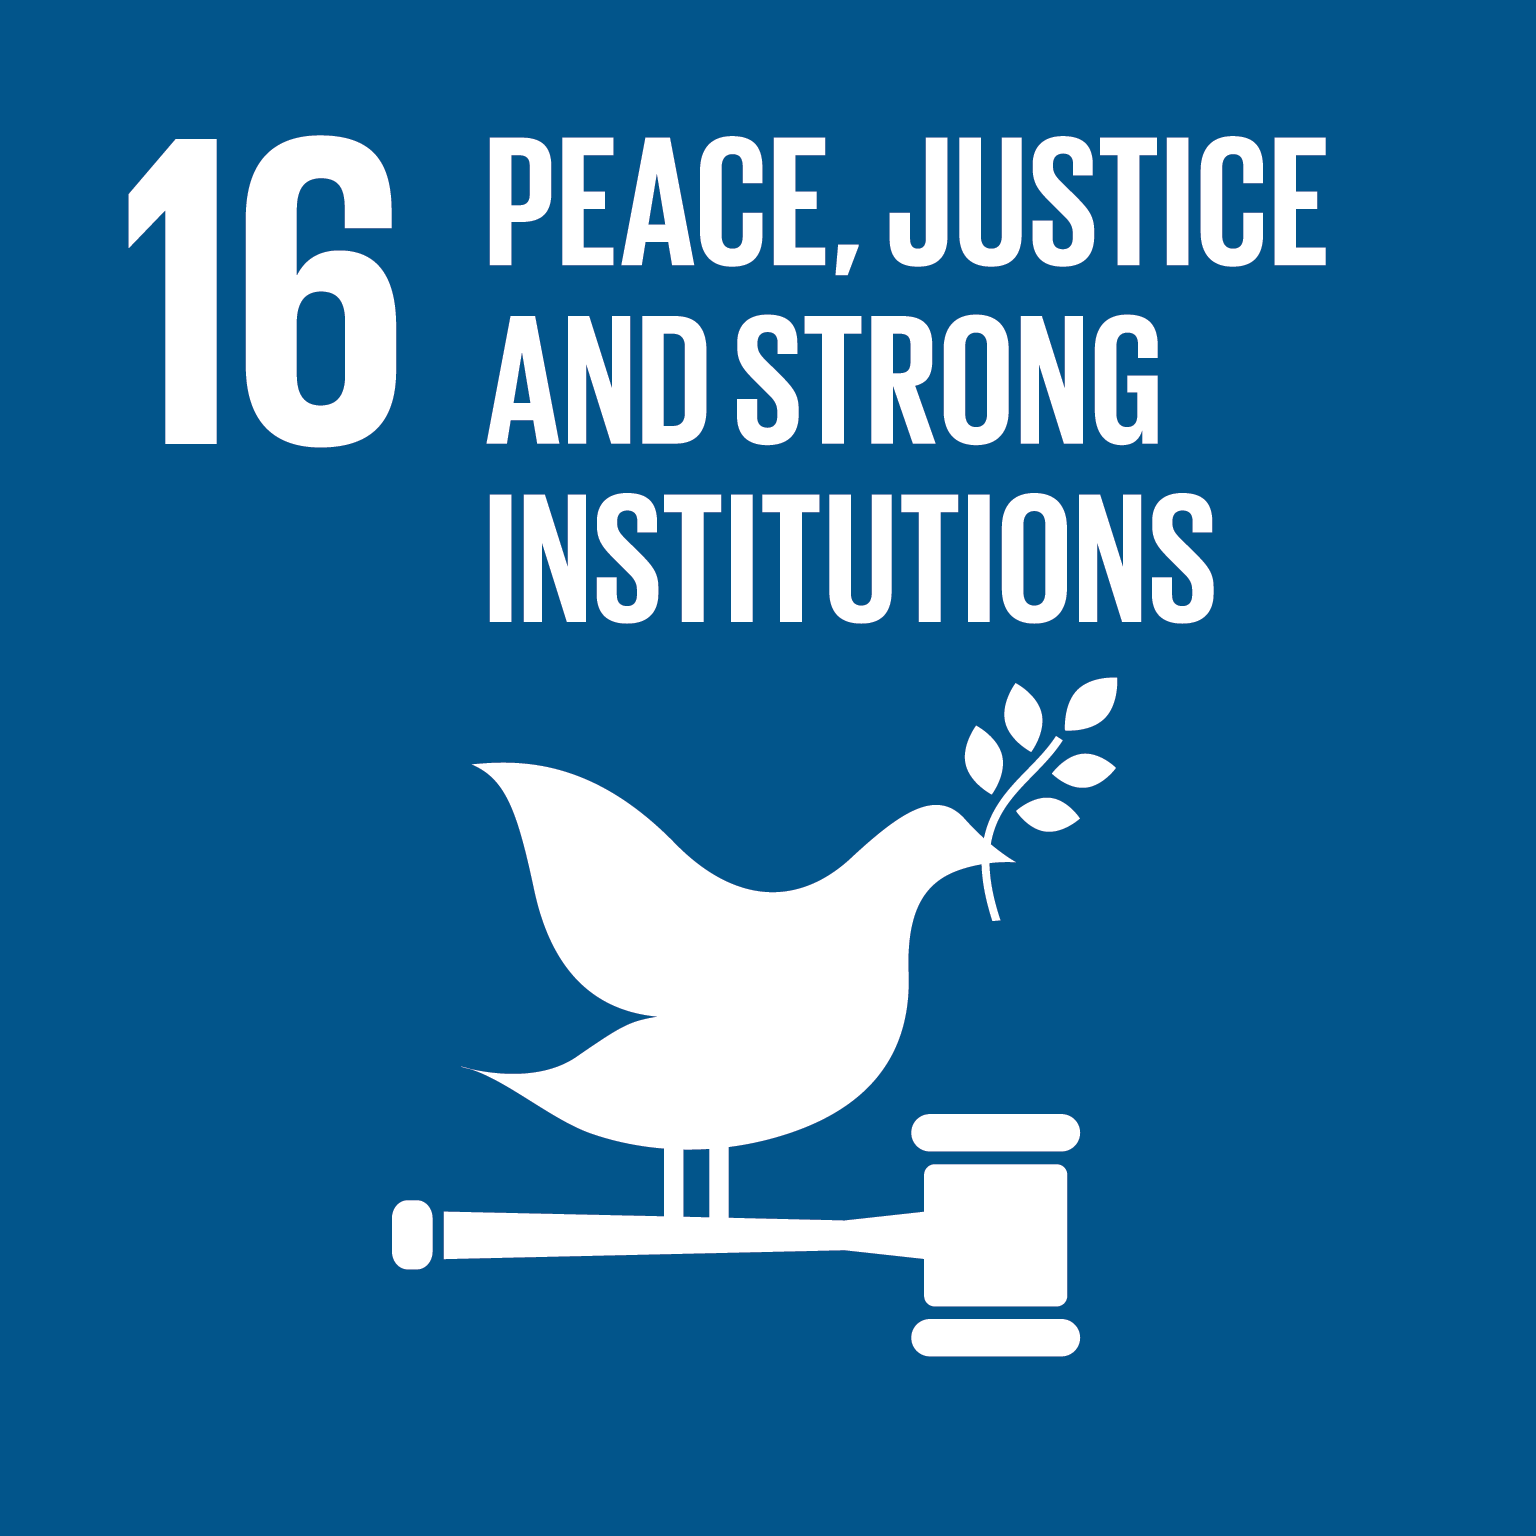 Verdensmål 16: Fred retfærdighed og stærke institutioner